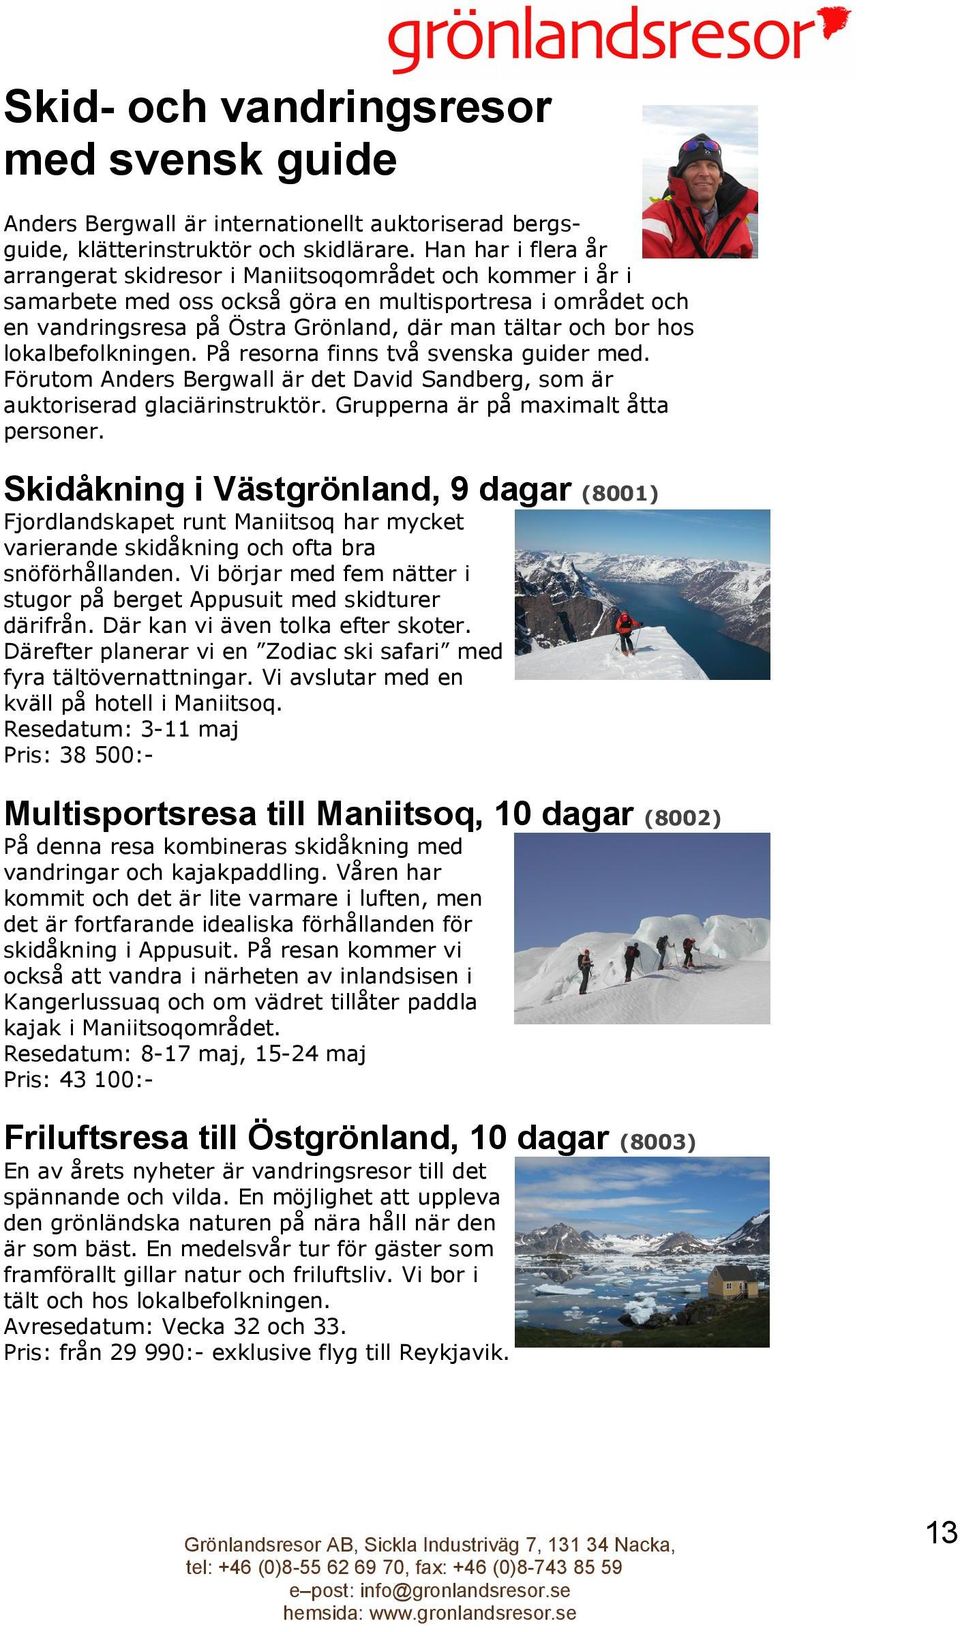 hos lokalbefolkningen. På resorna finns två svenska guider med. Förutom Anders Bergwall är det David Sandberg, som är auktoriserad glaciärinstruktör. Grupperna är på maximalt åtta personer.